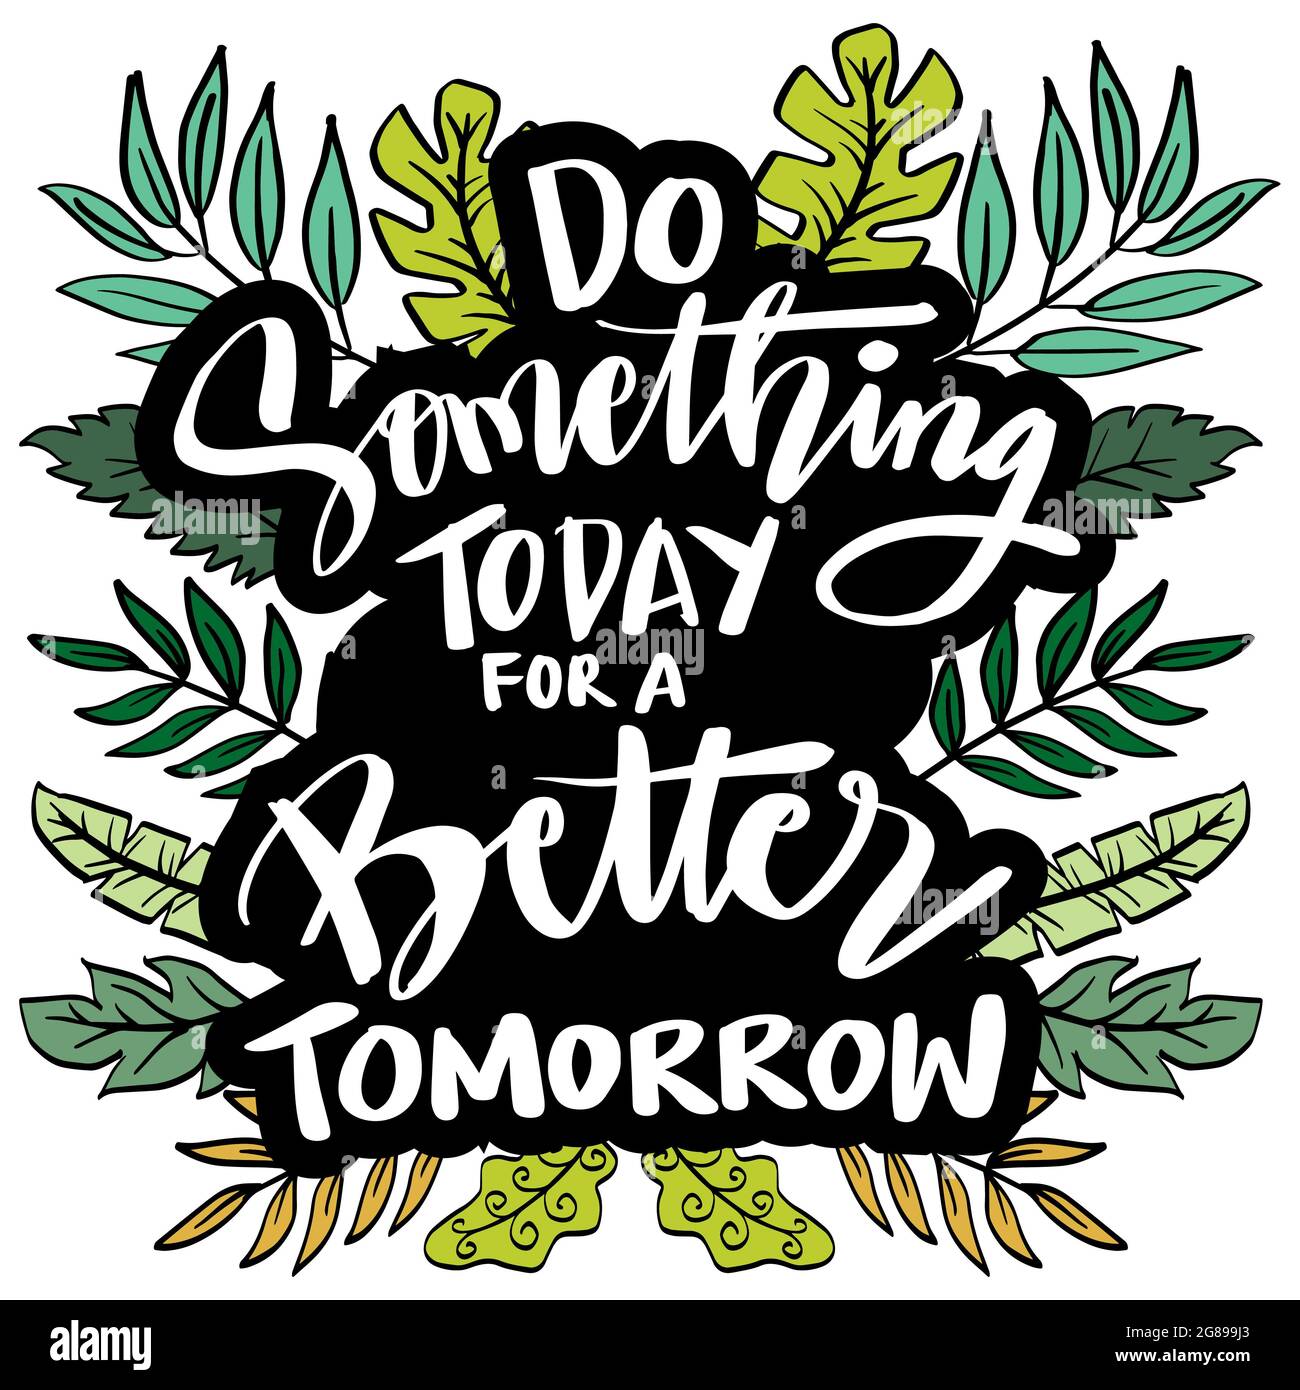 Fate qualcosa oggi per un domani migliore. Scritta motivazionale disegnata a mano sullo sfondo Foto Stock